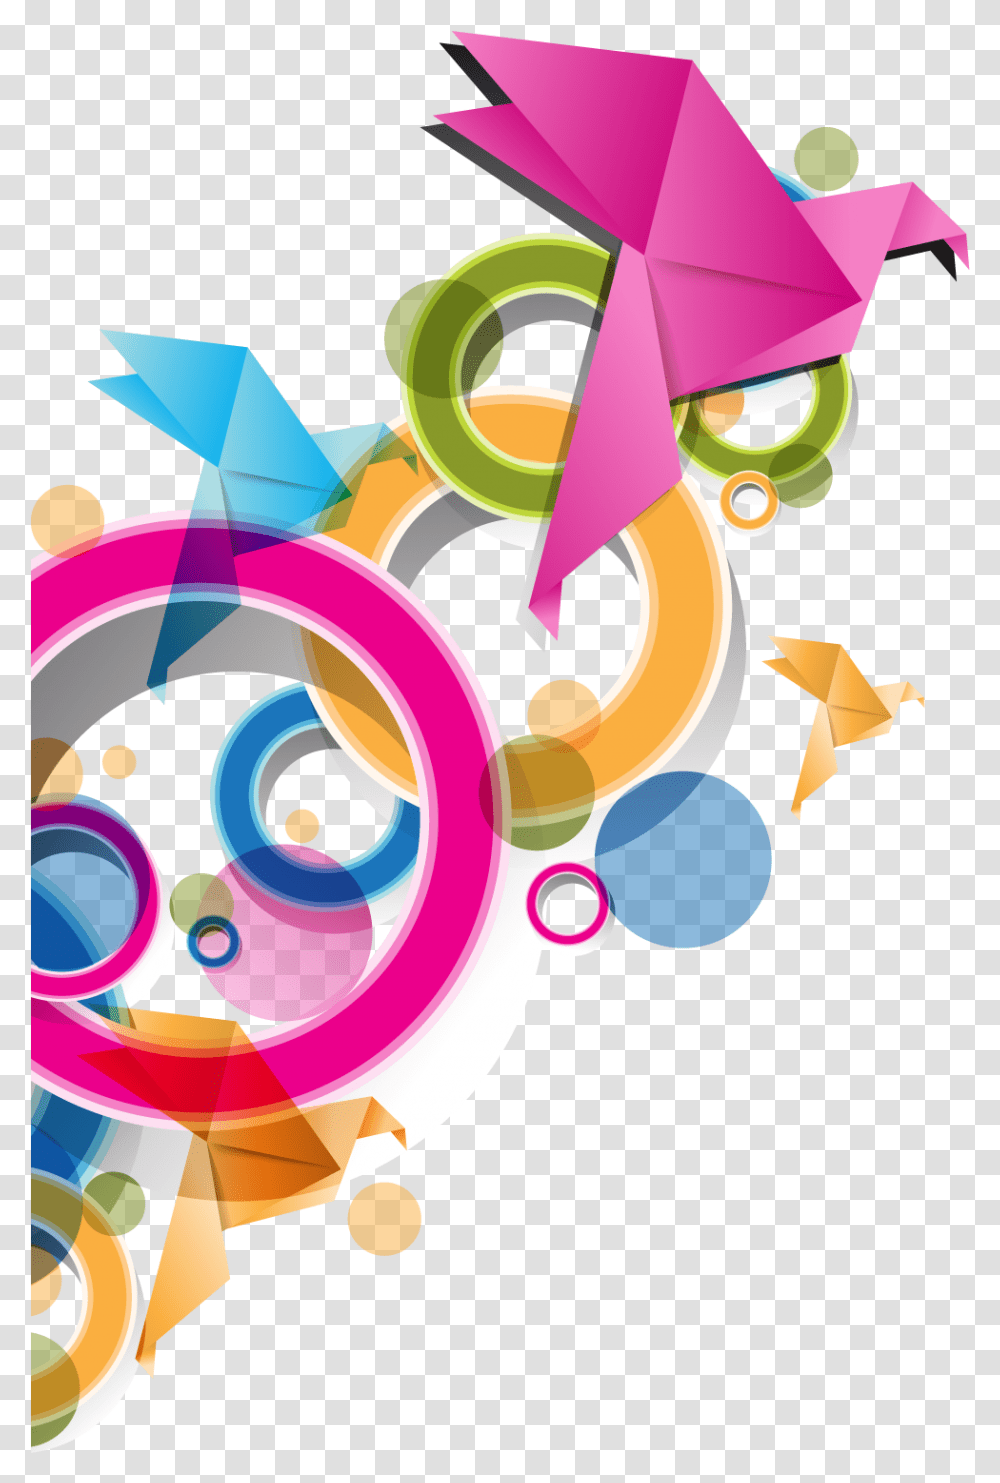 Graphic Design Clipart Arte Vectores Para Photoshop, Floral Design, Pattern, Purple Transparent Png